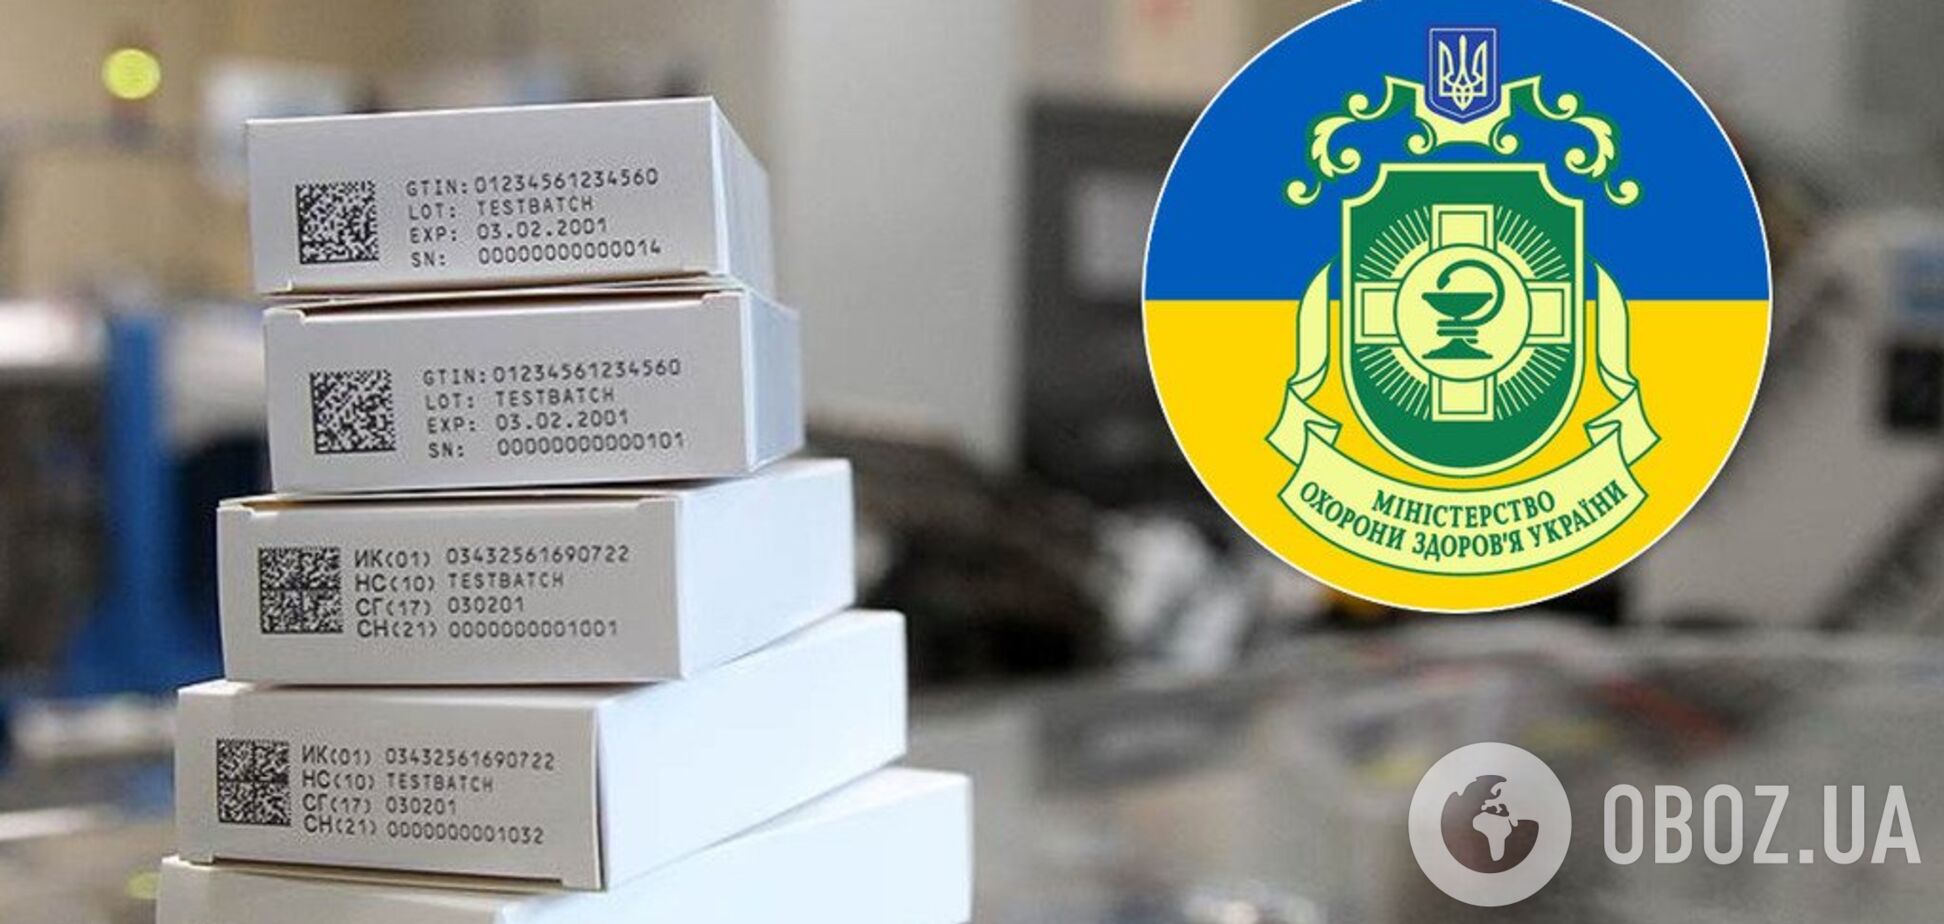 В Украине объявили 'войну' фальшивым лекарствам: что это значит